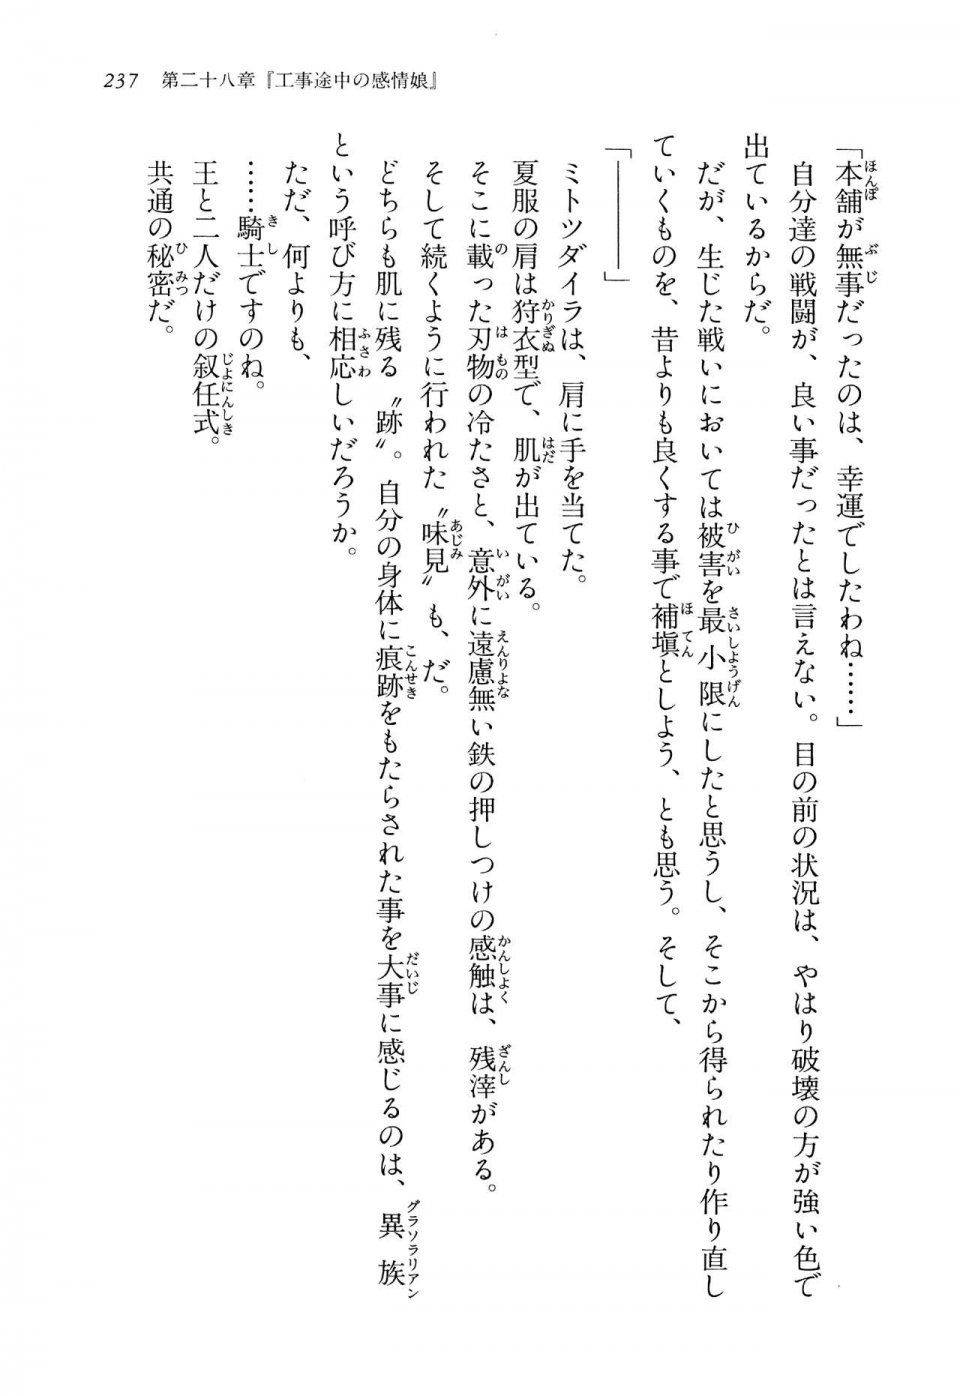 Kyoukai Senjou no Horizon LN Vol 14(6B) - Photo #237